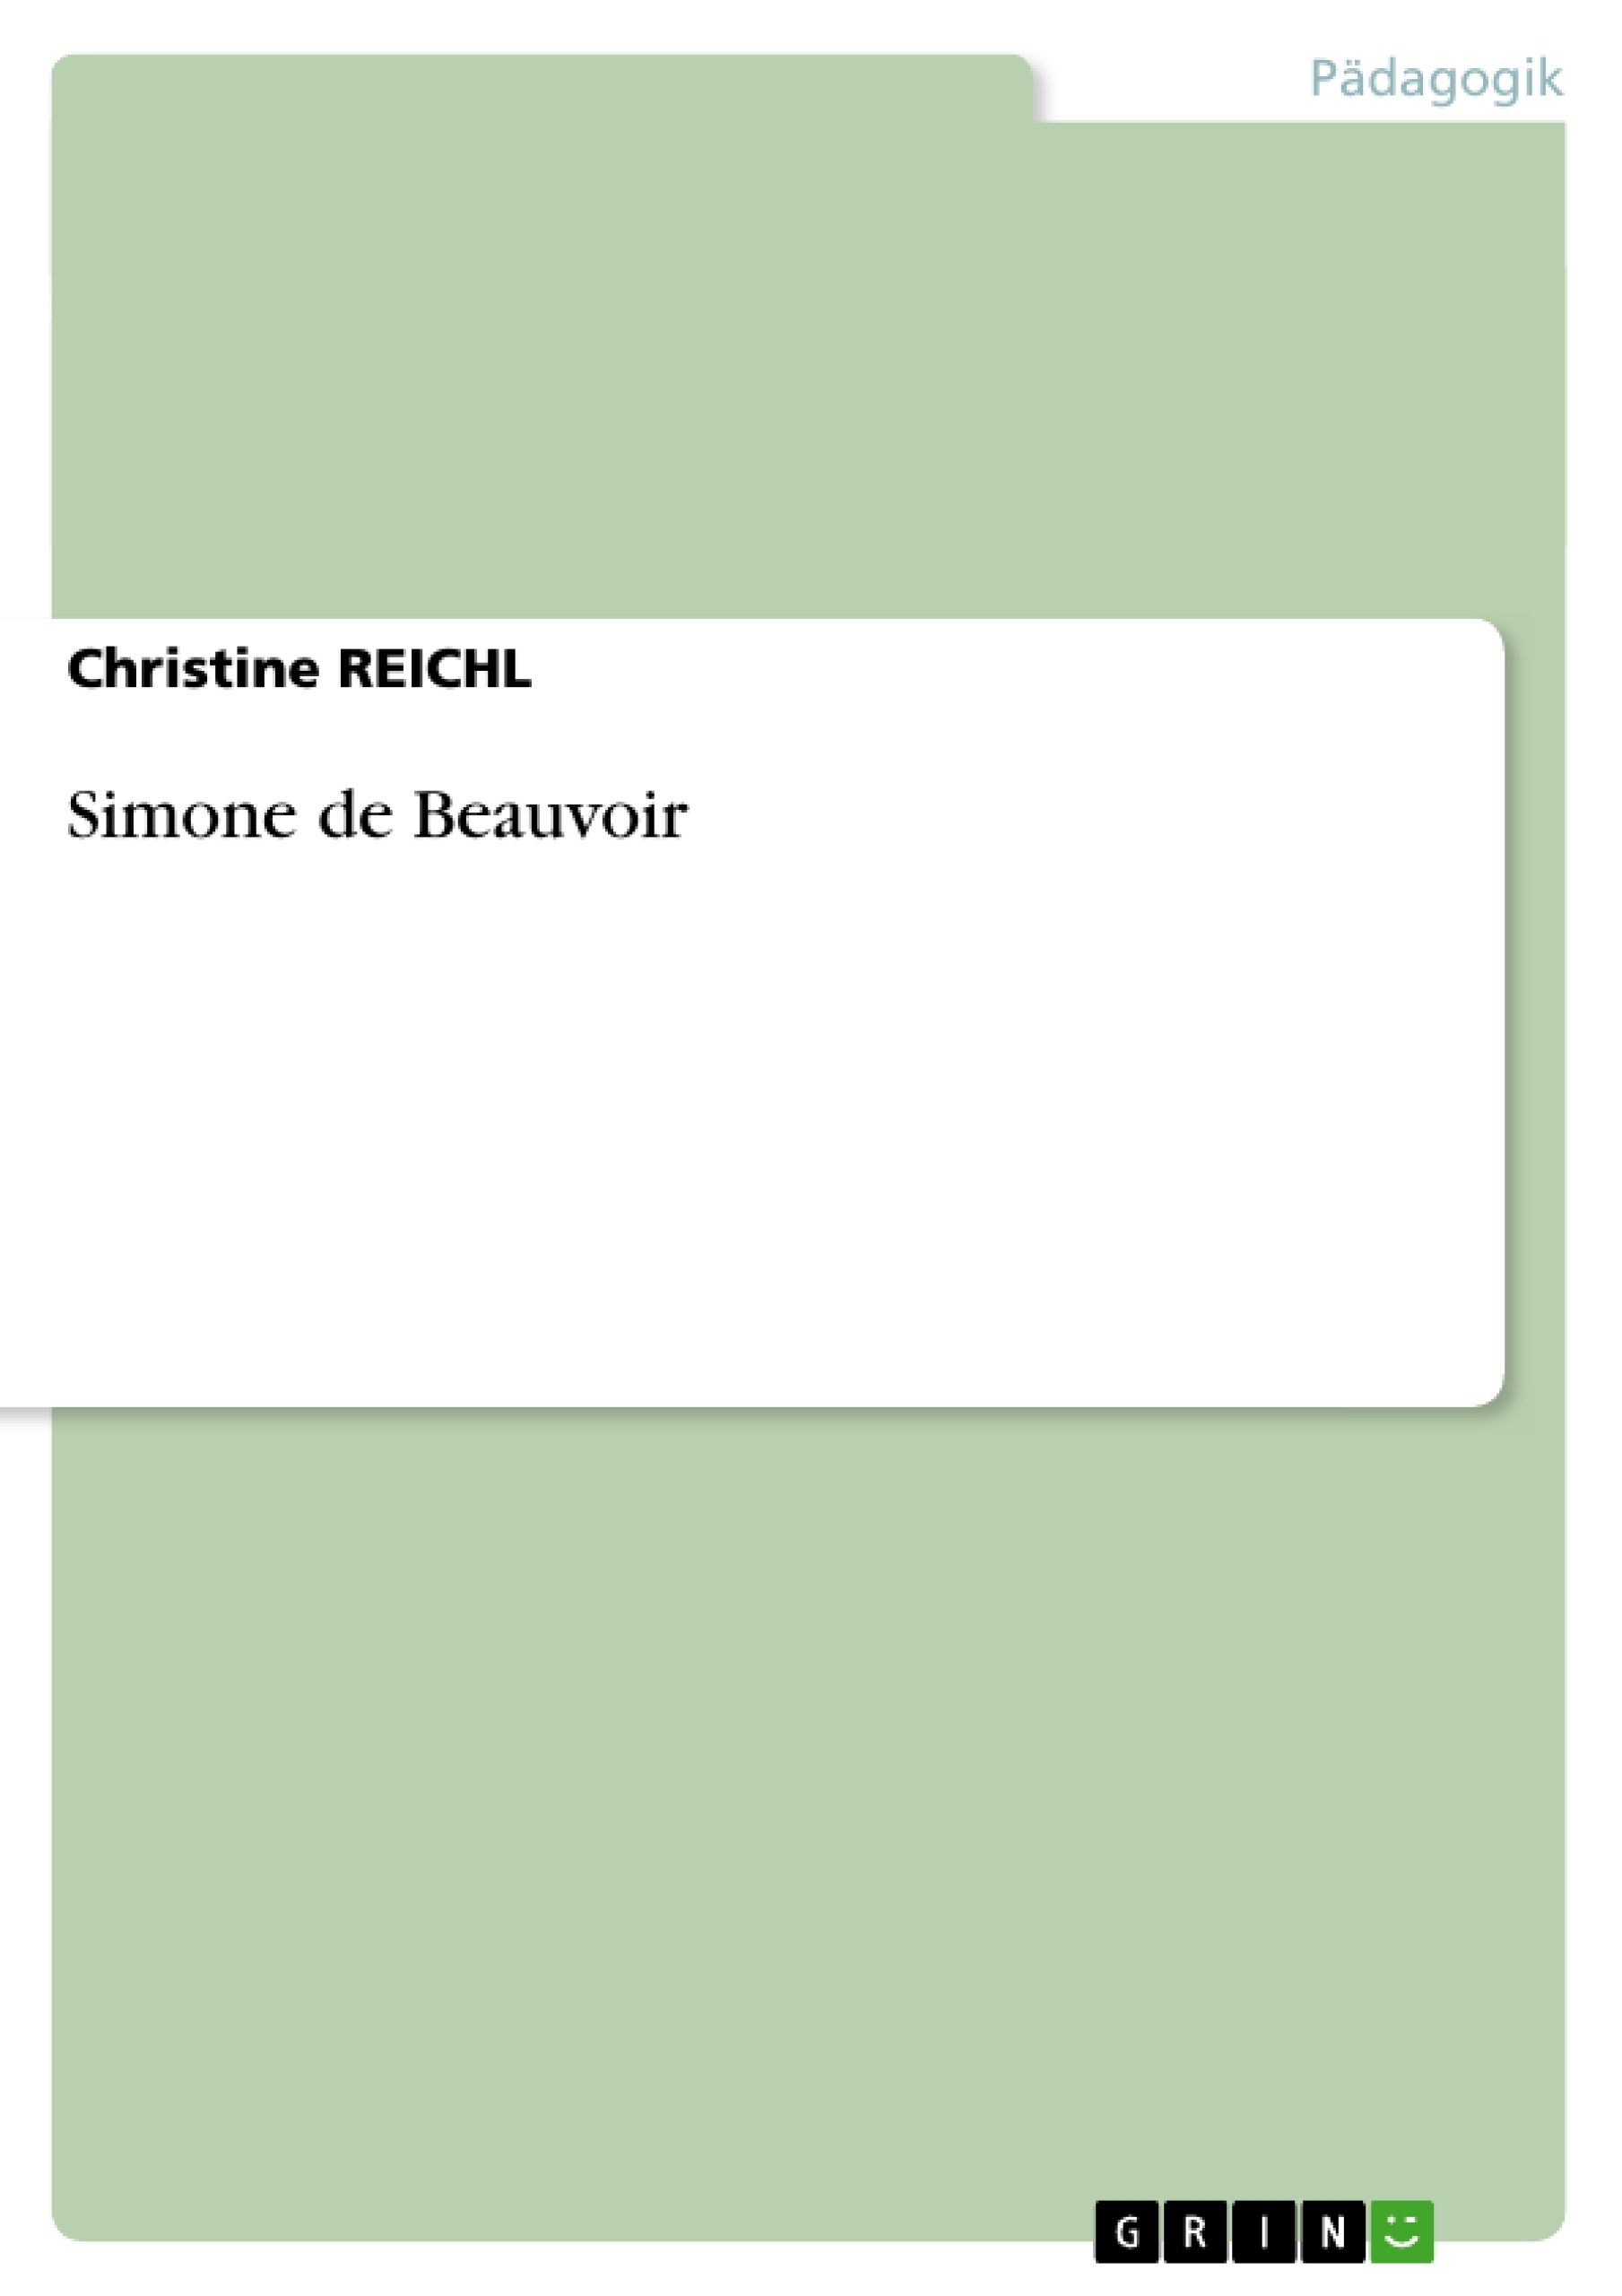 Título: Simone de Beauvoir